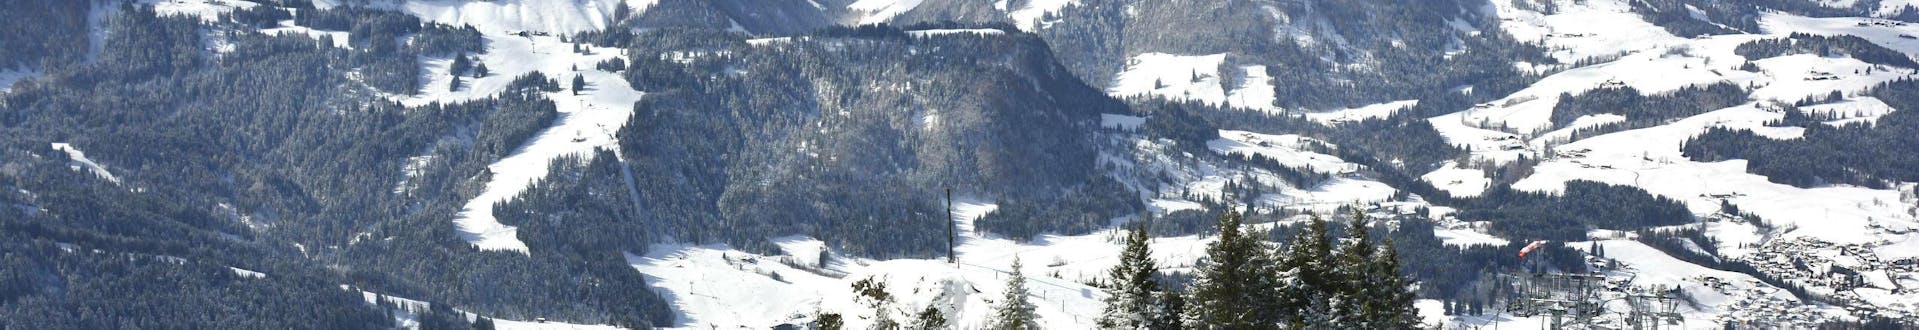 Ein Blick von oben über das tiroler Skigebiet Fieberbrunn, wo mehrere Skischulen ihre Skikurse für Skifahrer jeden Alters und jeden Levels anbieten.